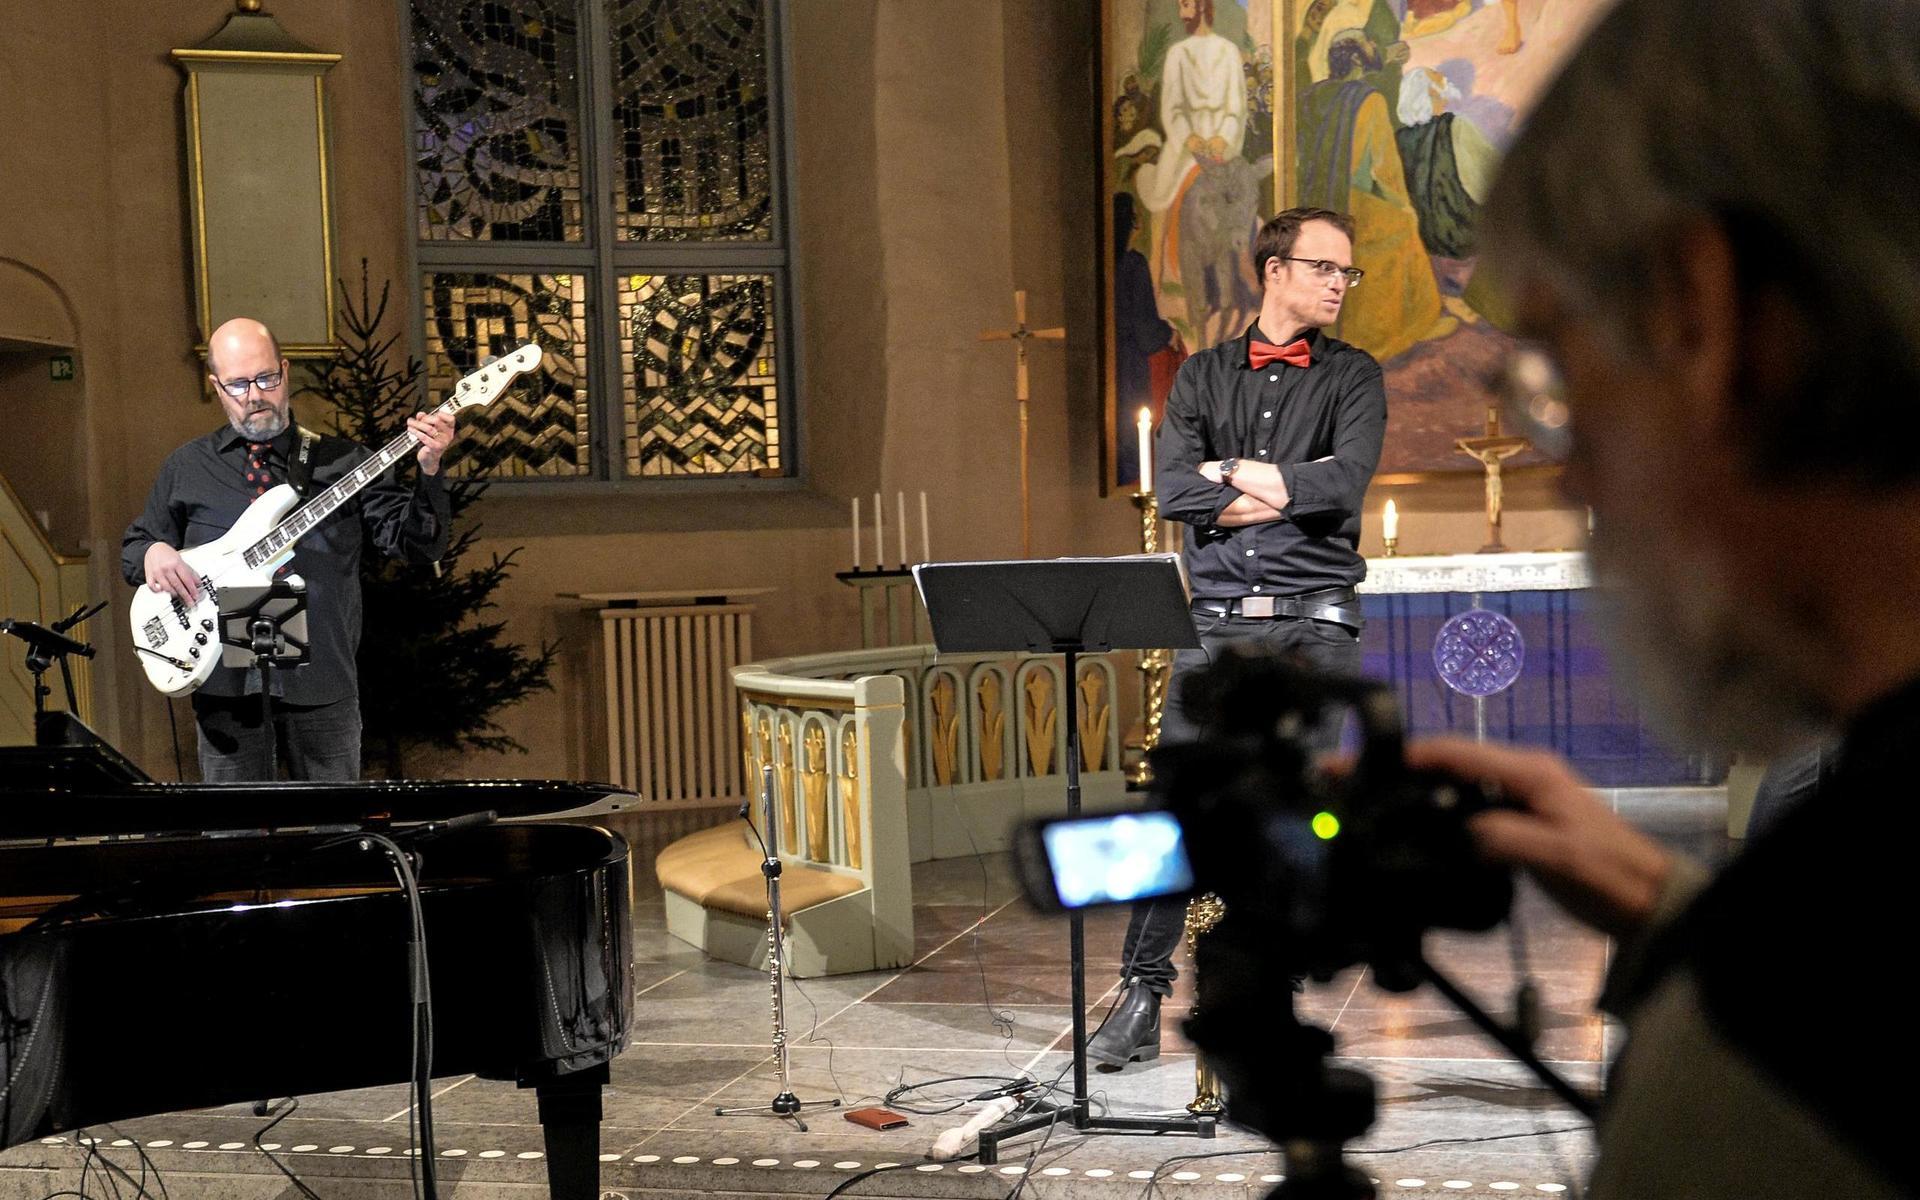 Svenska kyrkan i Alingsås anpassar sig till coronapandemin och sänder sina julkonserter på nätet. Här syns Kenneth Holmström på bas, Joel Hagen på flöjt/saxofon och kyrkomusikern Lollo Konnebäck bakom kameran.